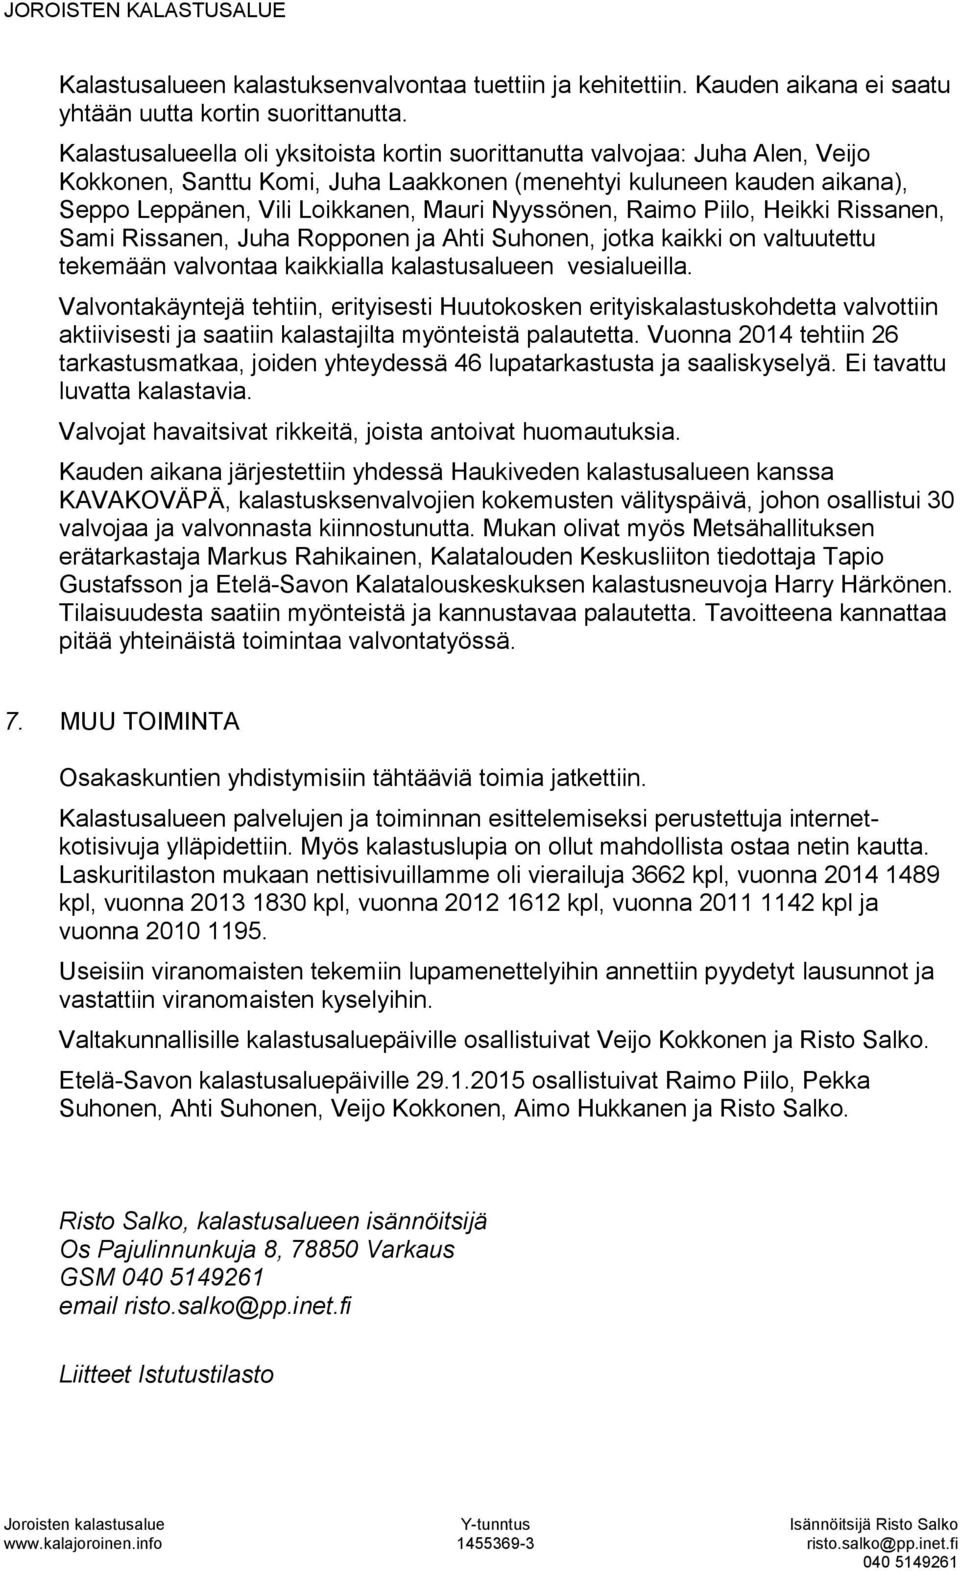 Nyyssönen, Raimo Piilo, Heikki Rissanen, Sami Rissanen, Juha Ropponen ja Ahti Suhonen, jotka kaikki on valtuutettu tekemään valvontaa kaikkialla kalastusalueen vesialueilla.